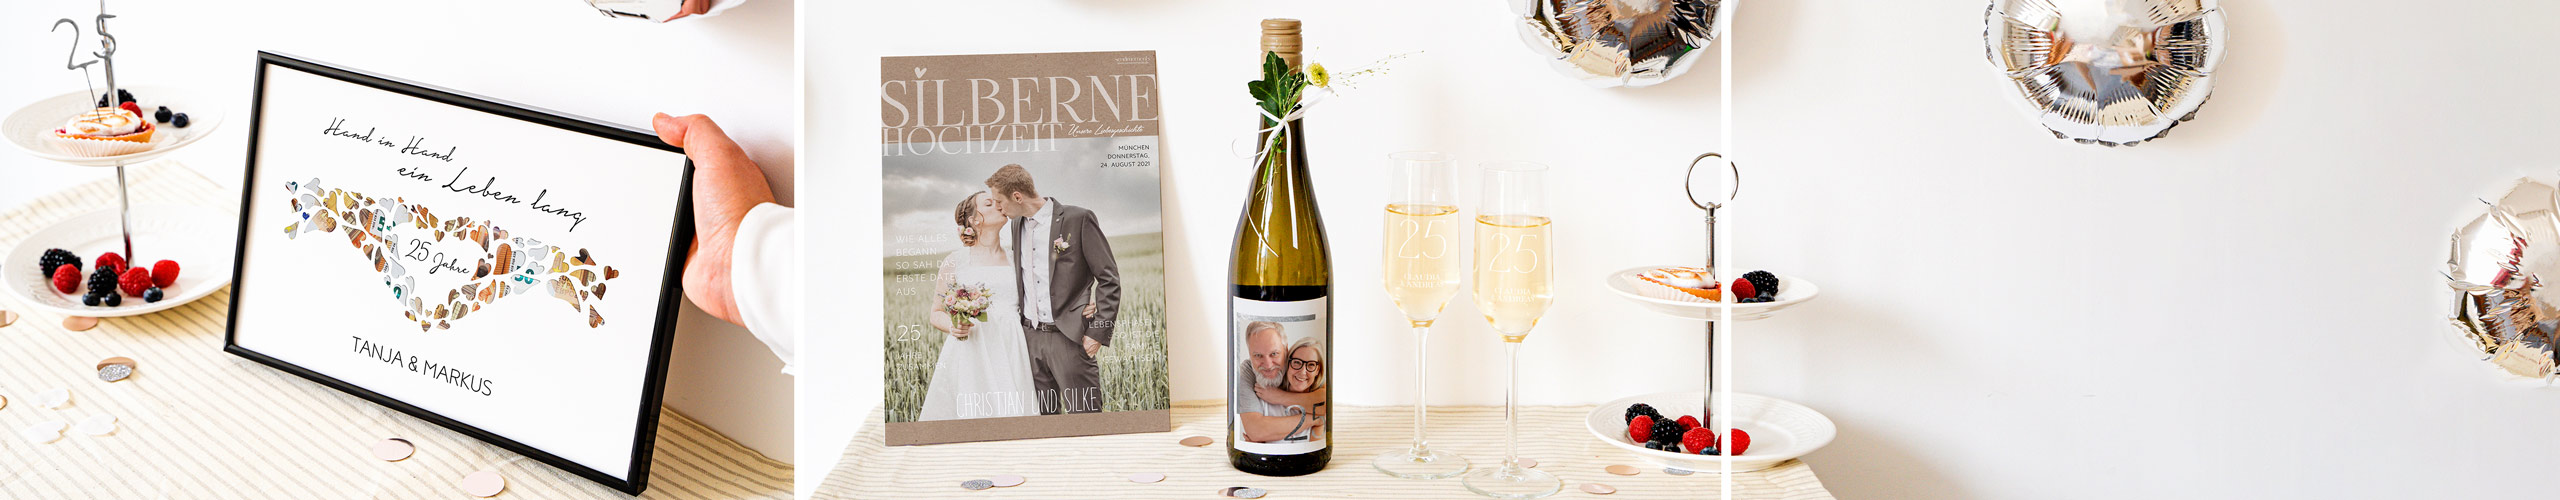 Festzeitung, personalisierte Weinflasche und Sektgläser auf Tisch zur Silbernen Hochzeit